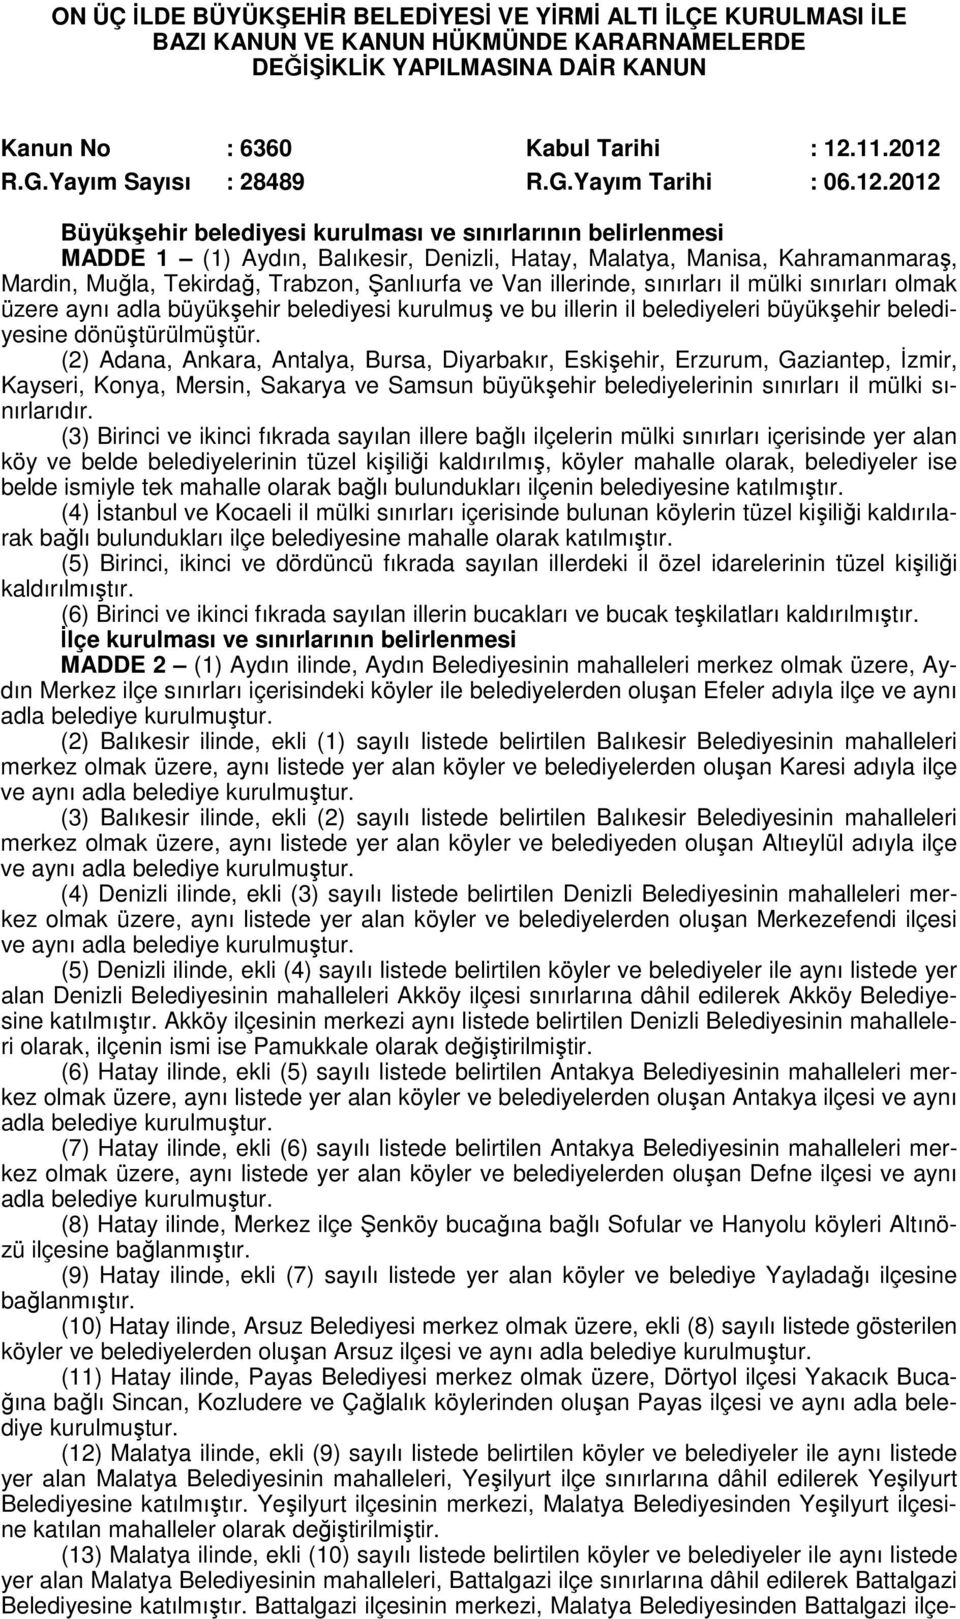 2012 Büyükşehir belediyesi kurulması ve sınırlarının belirlenmesi MADDE 1 (1) Aydın, Balıkesir, Denizli, Hatay, Malatya, Manisa, Kahramanmaraş, Mardin, Muğla, Tekirdağ, Trabzon, Şanlıurfa ve Van